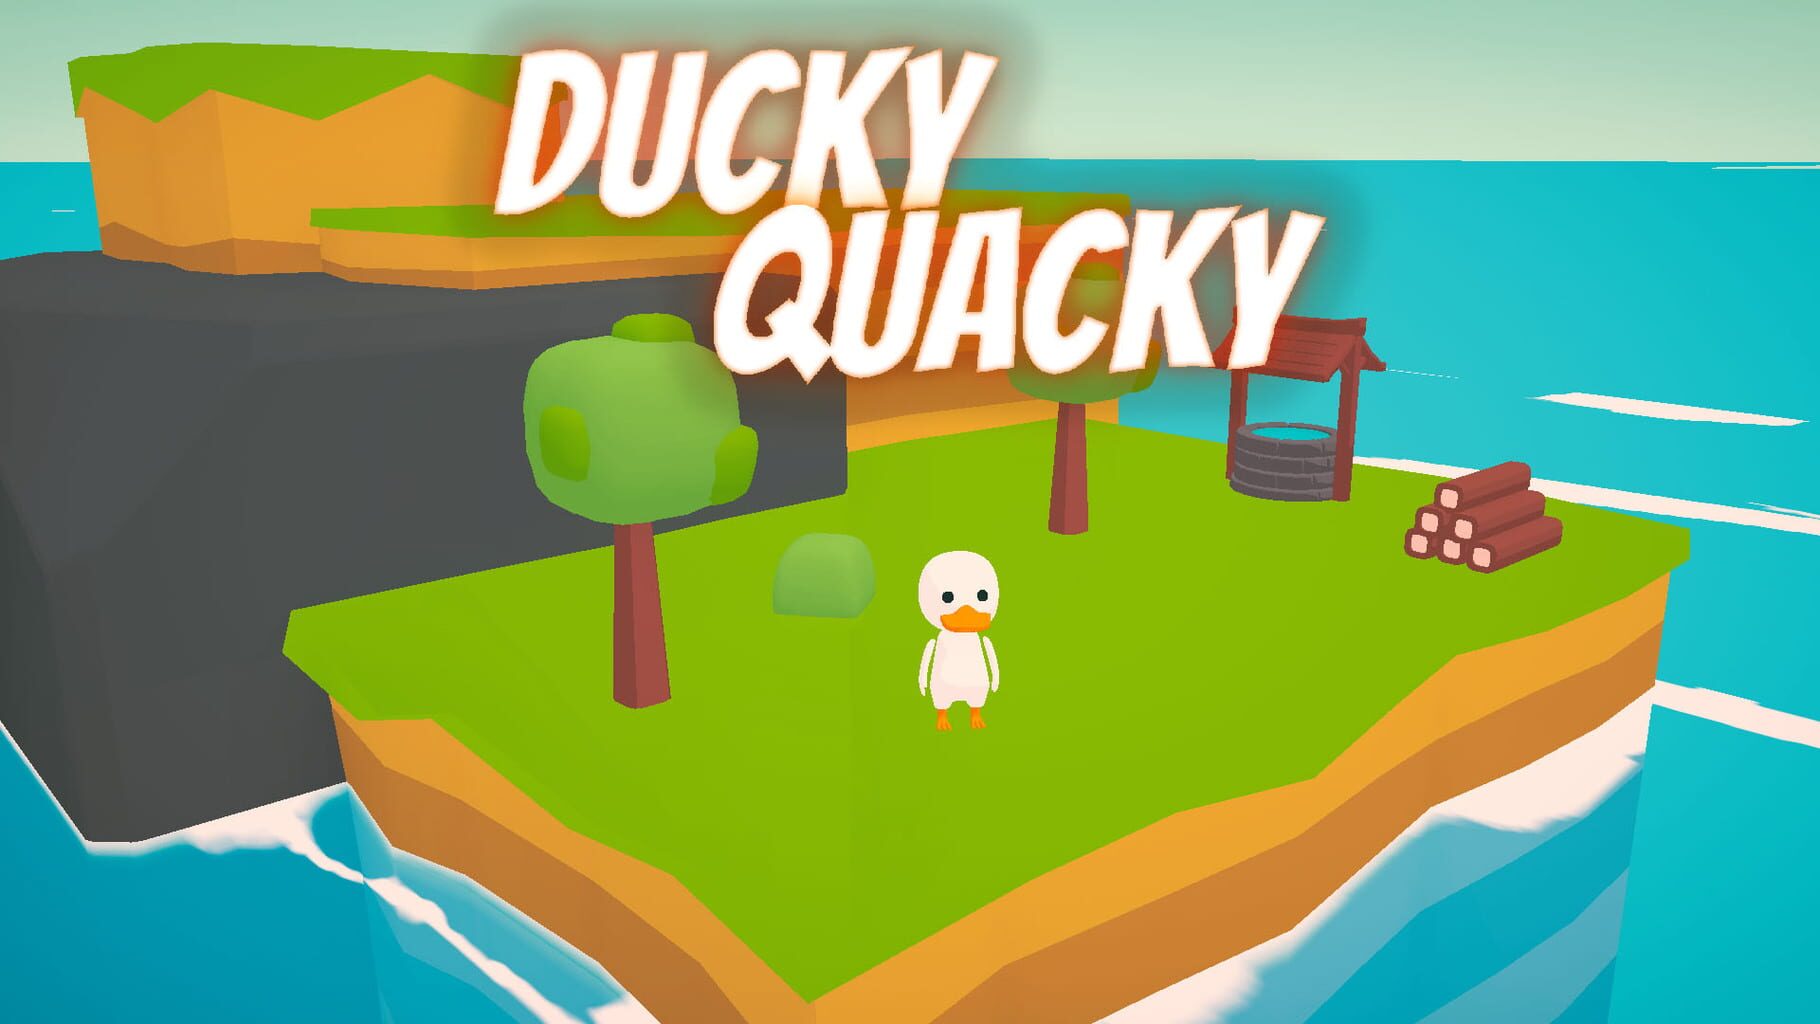 Ducky Quacky artwork